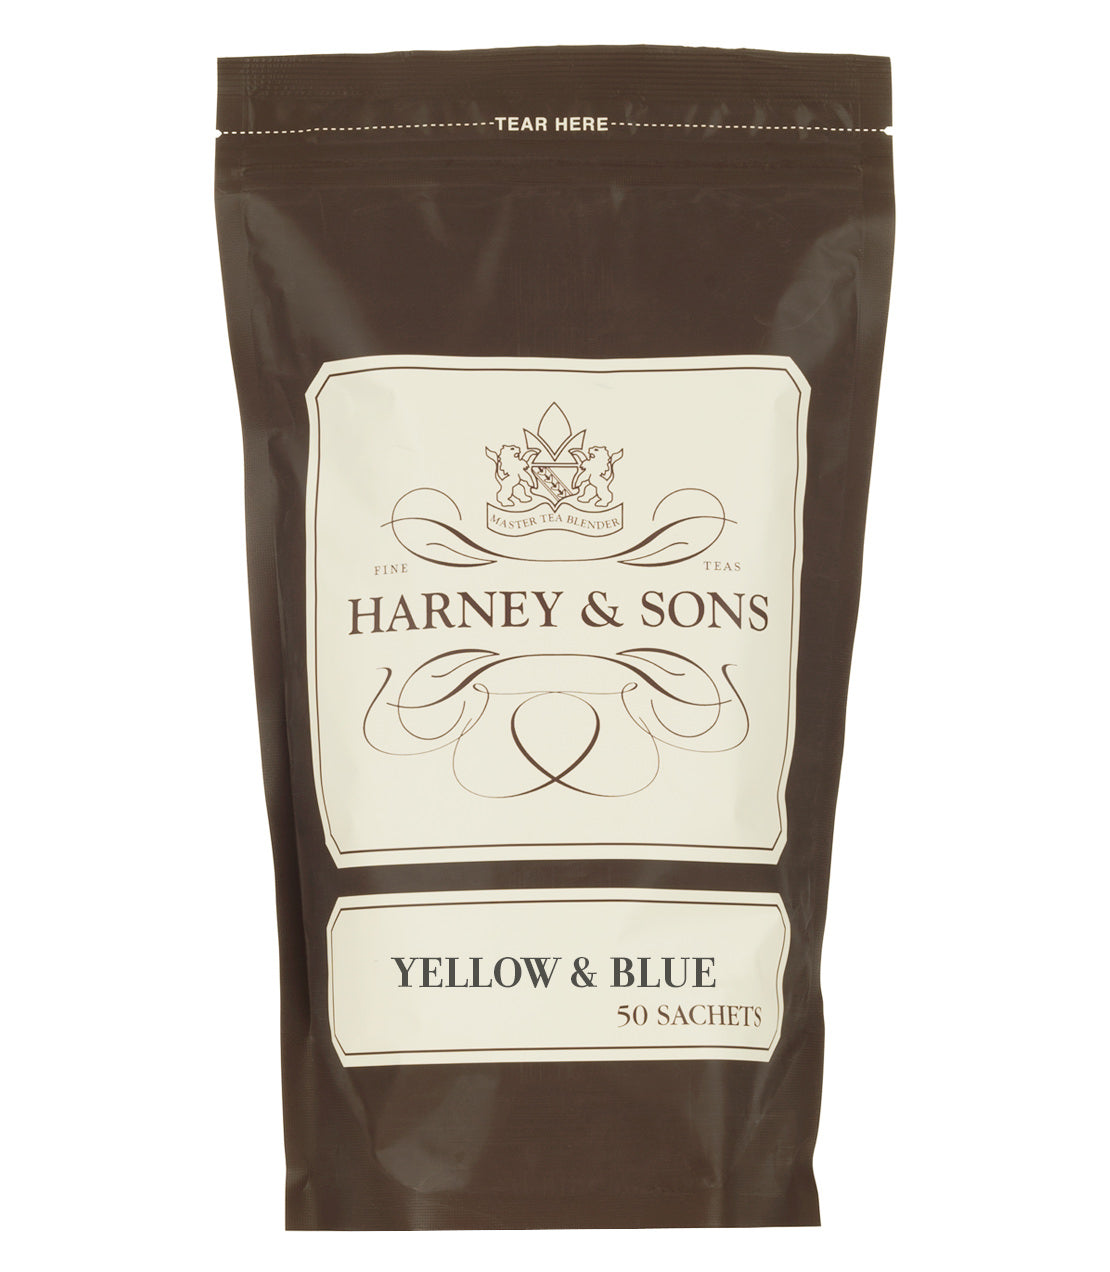 Yellow & Blue, Bag of 50 Sachets - Sachets Bag of 50 Sachets - Harney & Sons Fine Teas